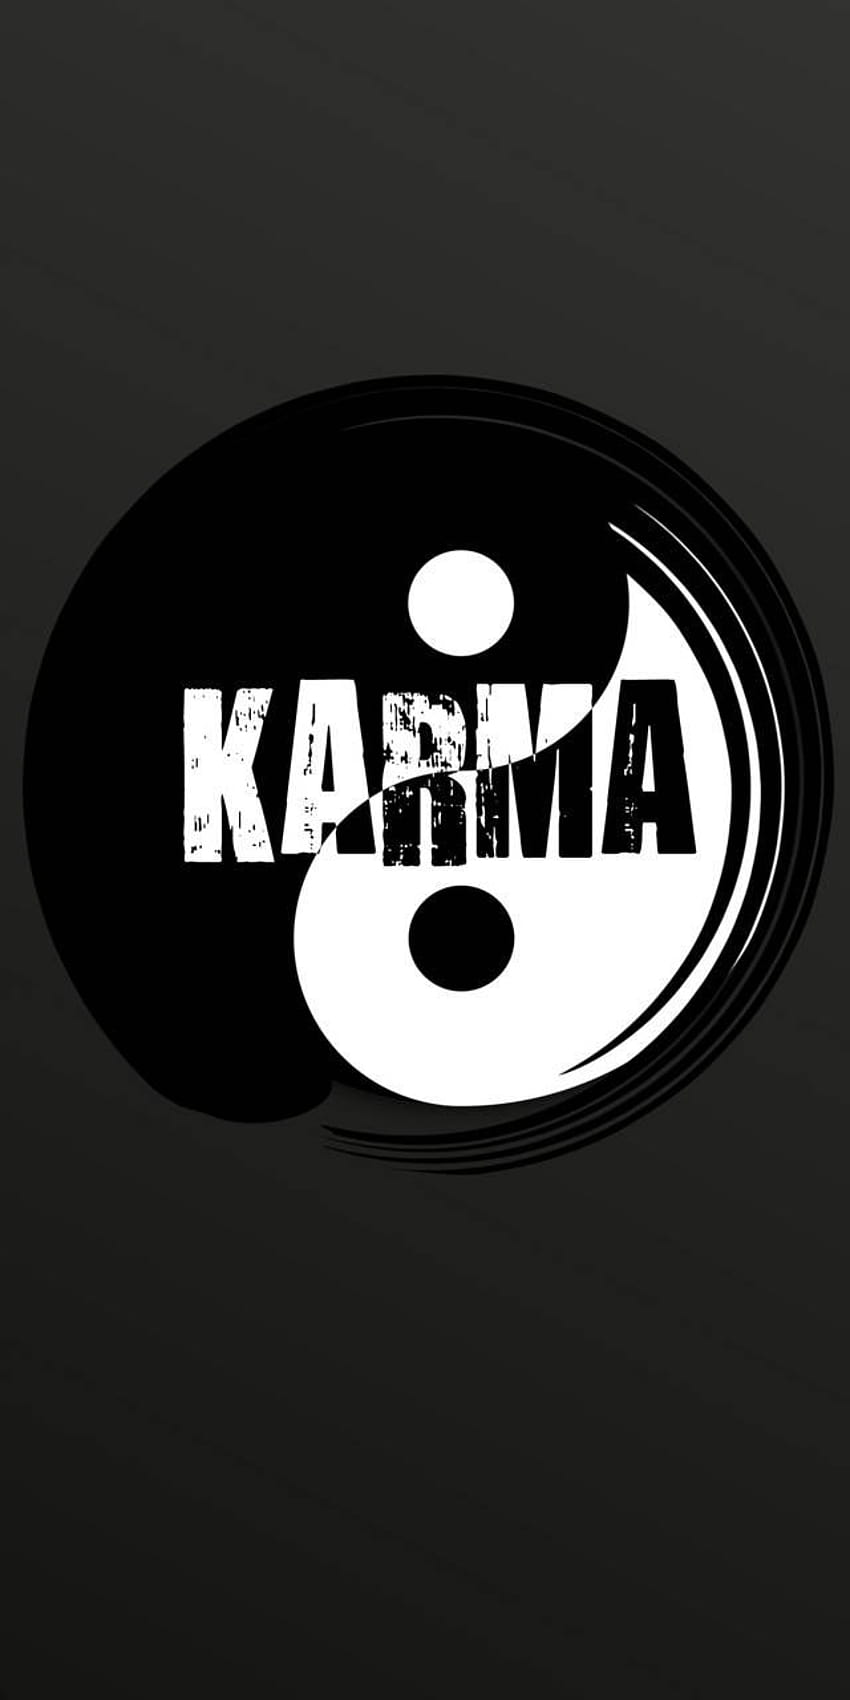 Details more than 77 karma logo wallpaper - 3tdesign.edu.vn